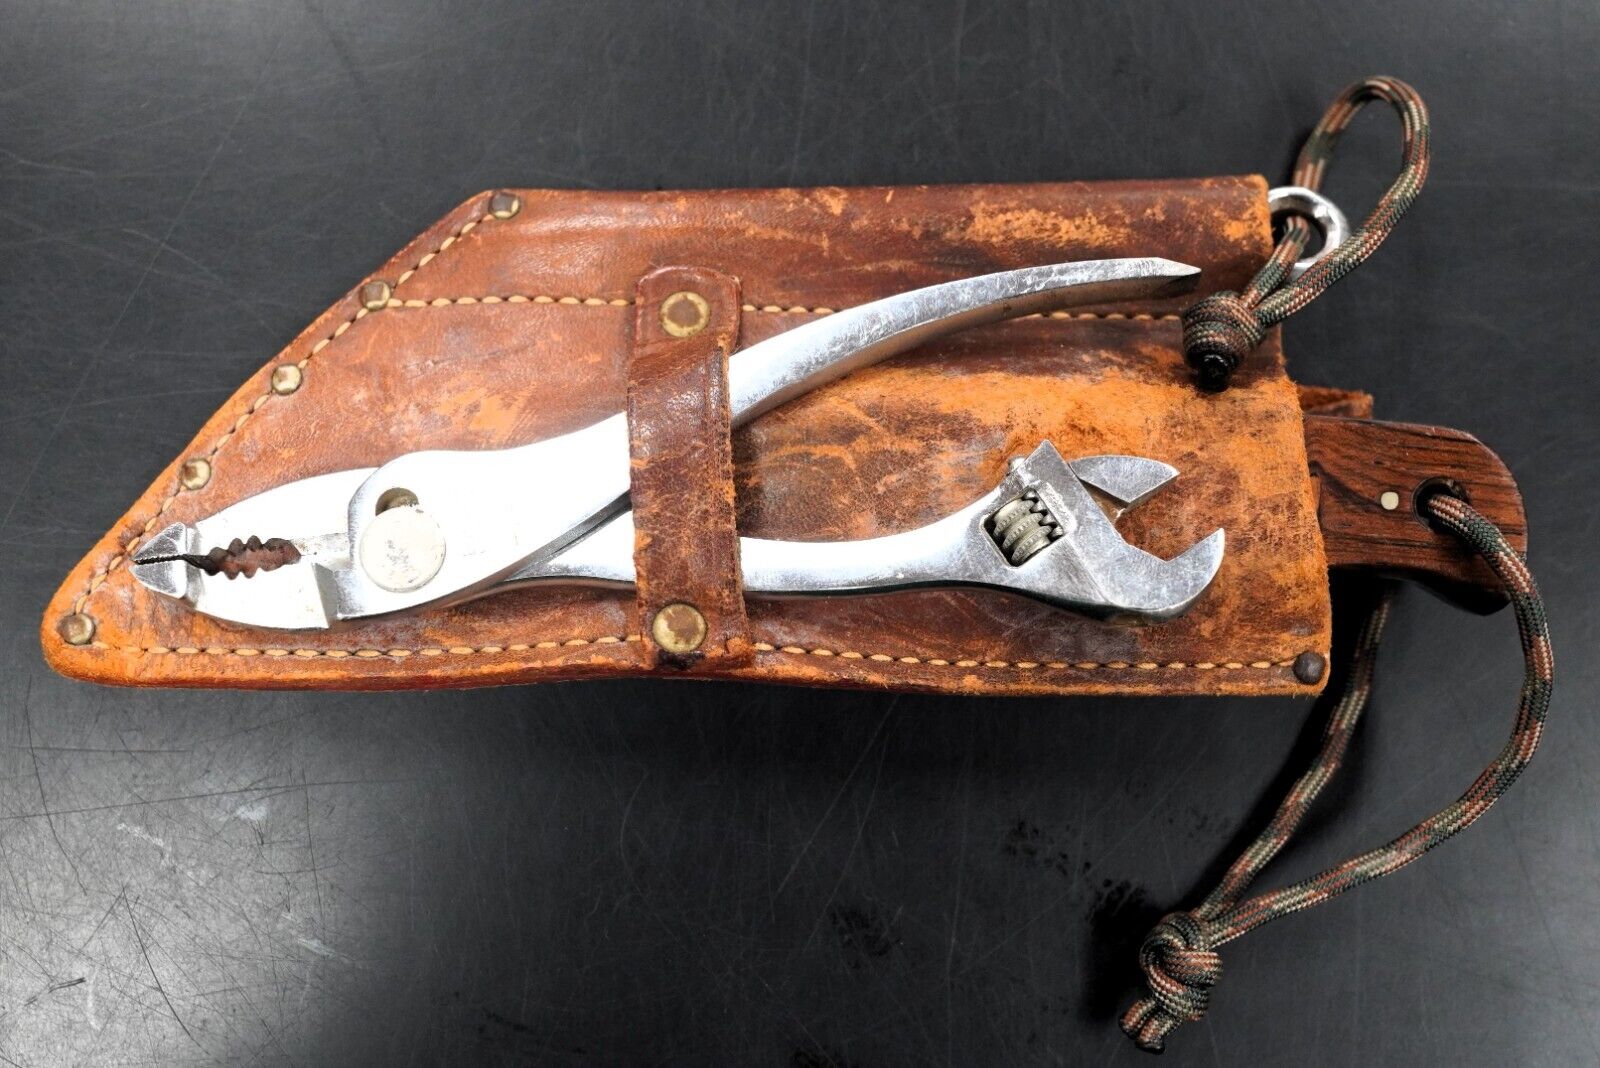 Vintage Kabar Rigging Knife With Punch Super Rare / R.C. Maconi 353899/110 USNR